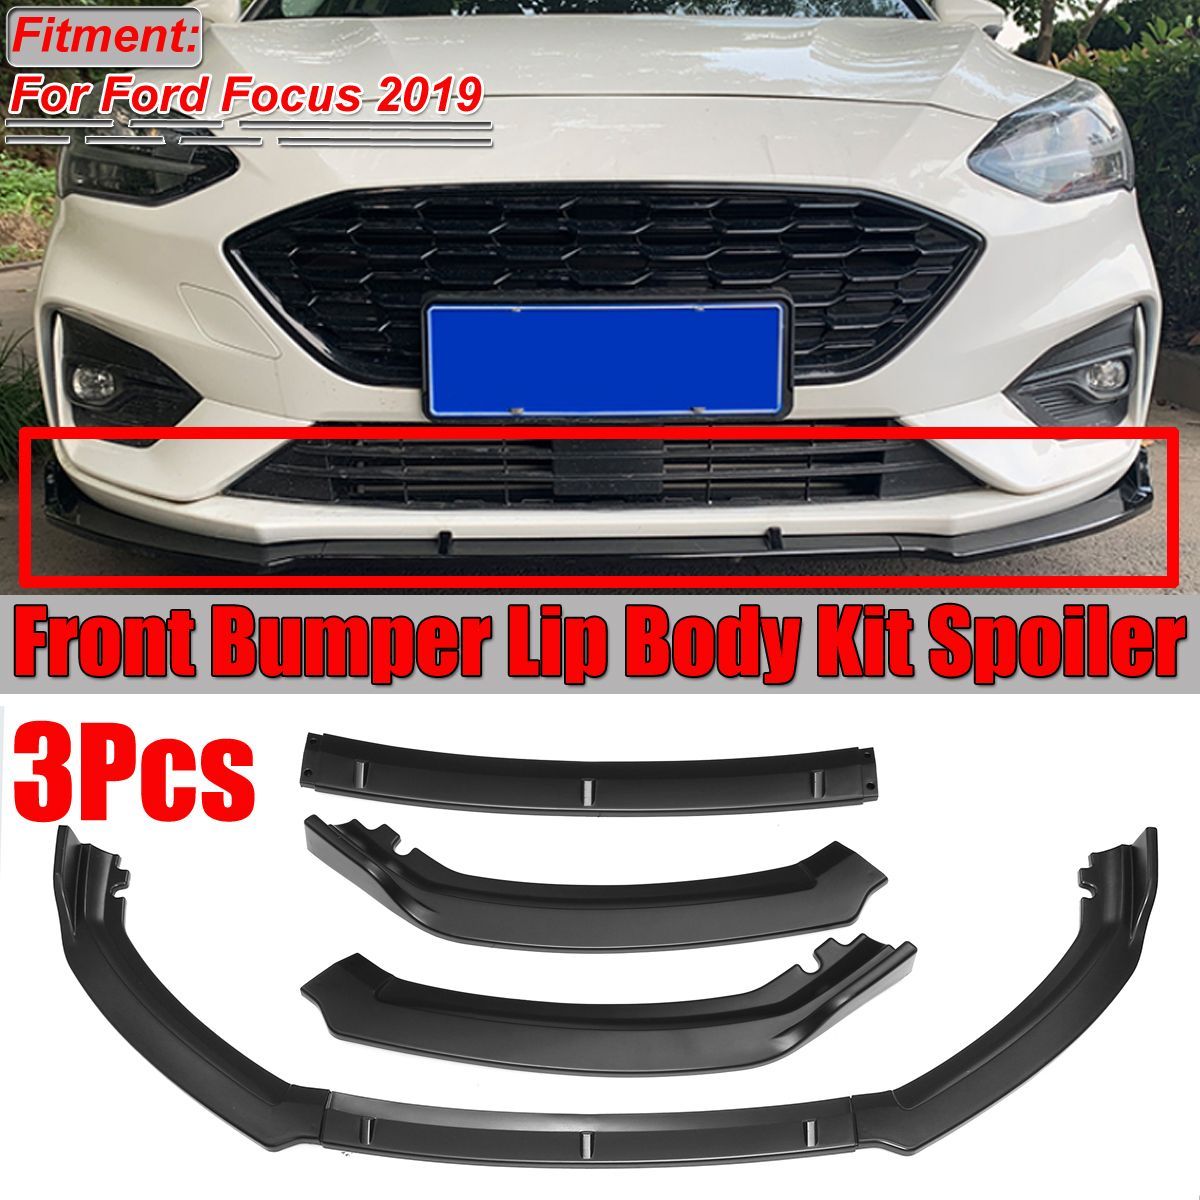 Car-Matte-Black-Front-Bumper-Lip-Body-Kit-Spoiler-For-Ford-Focus-2019-1685748